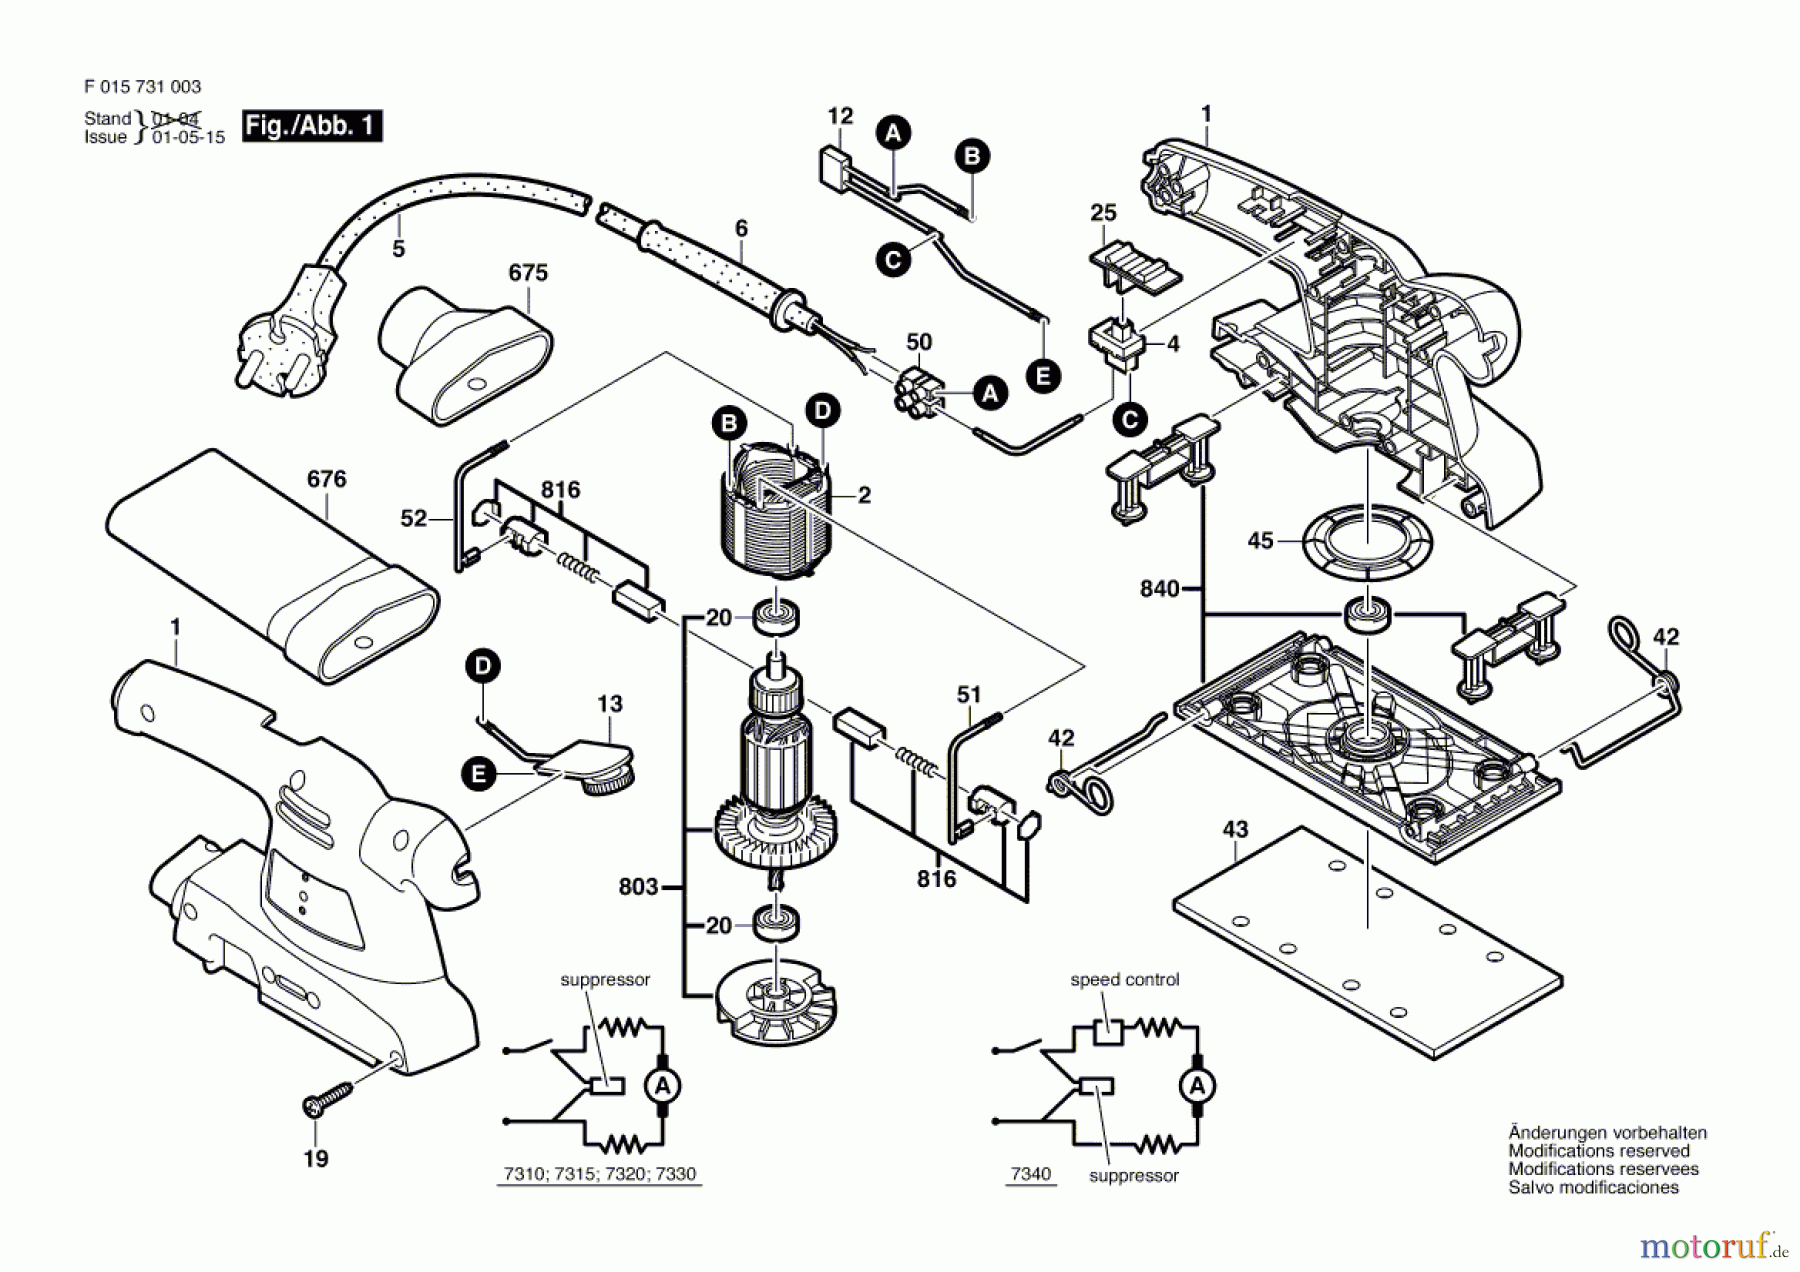  Bosch Werkzeug Schwingschleifer 7310 Seite 1